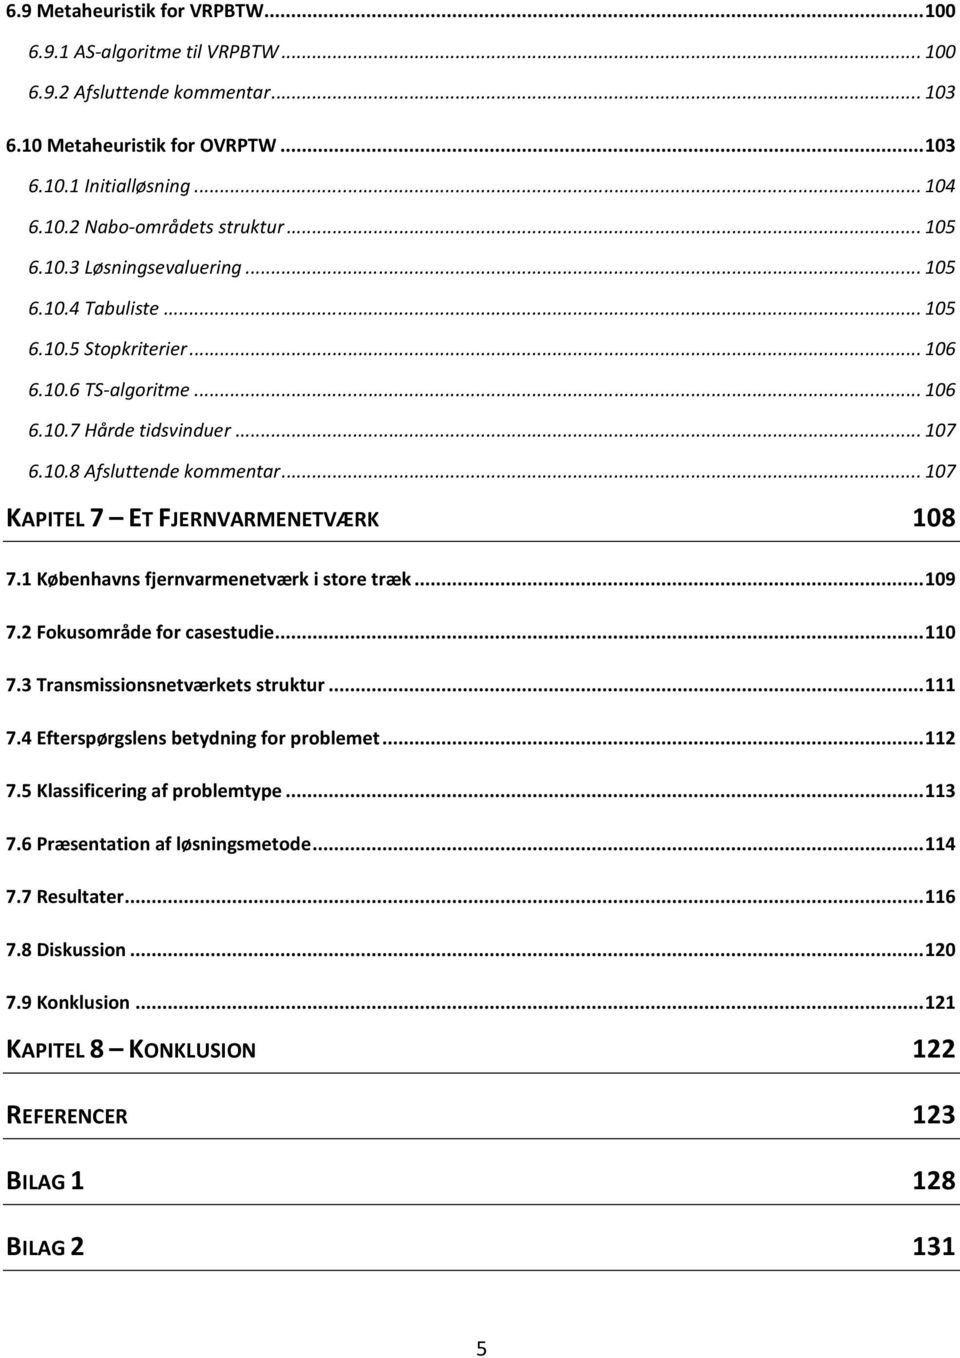 .. 107 KAPITEL 7 ET FJERNVARMENETVÆRK 108 7.1 Københavns fjernvarmenetvær store træ... 109 7.2 Fousområde for casestude... 110 7.3 Transmssonsnetværets strutur... 111 7.